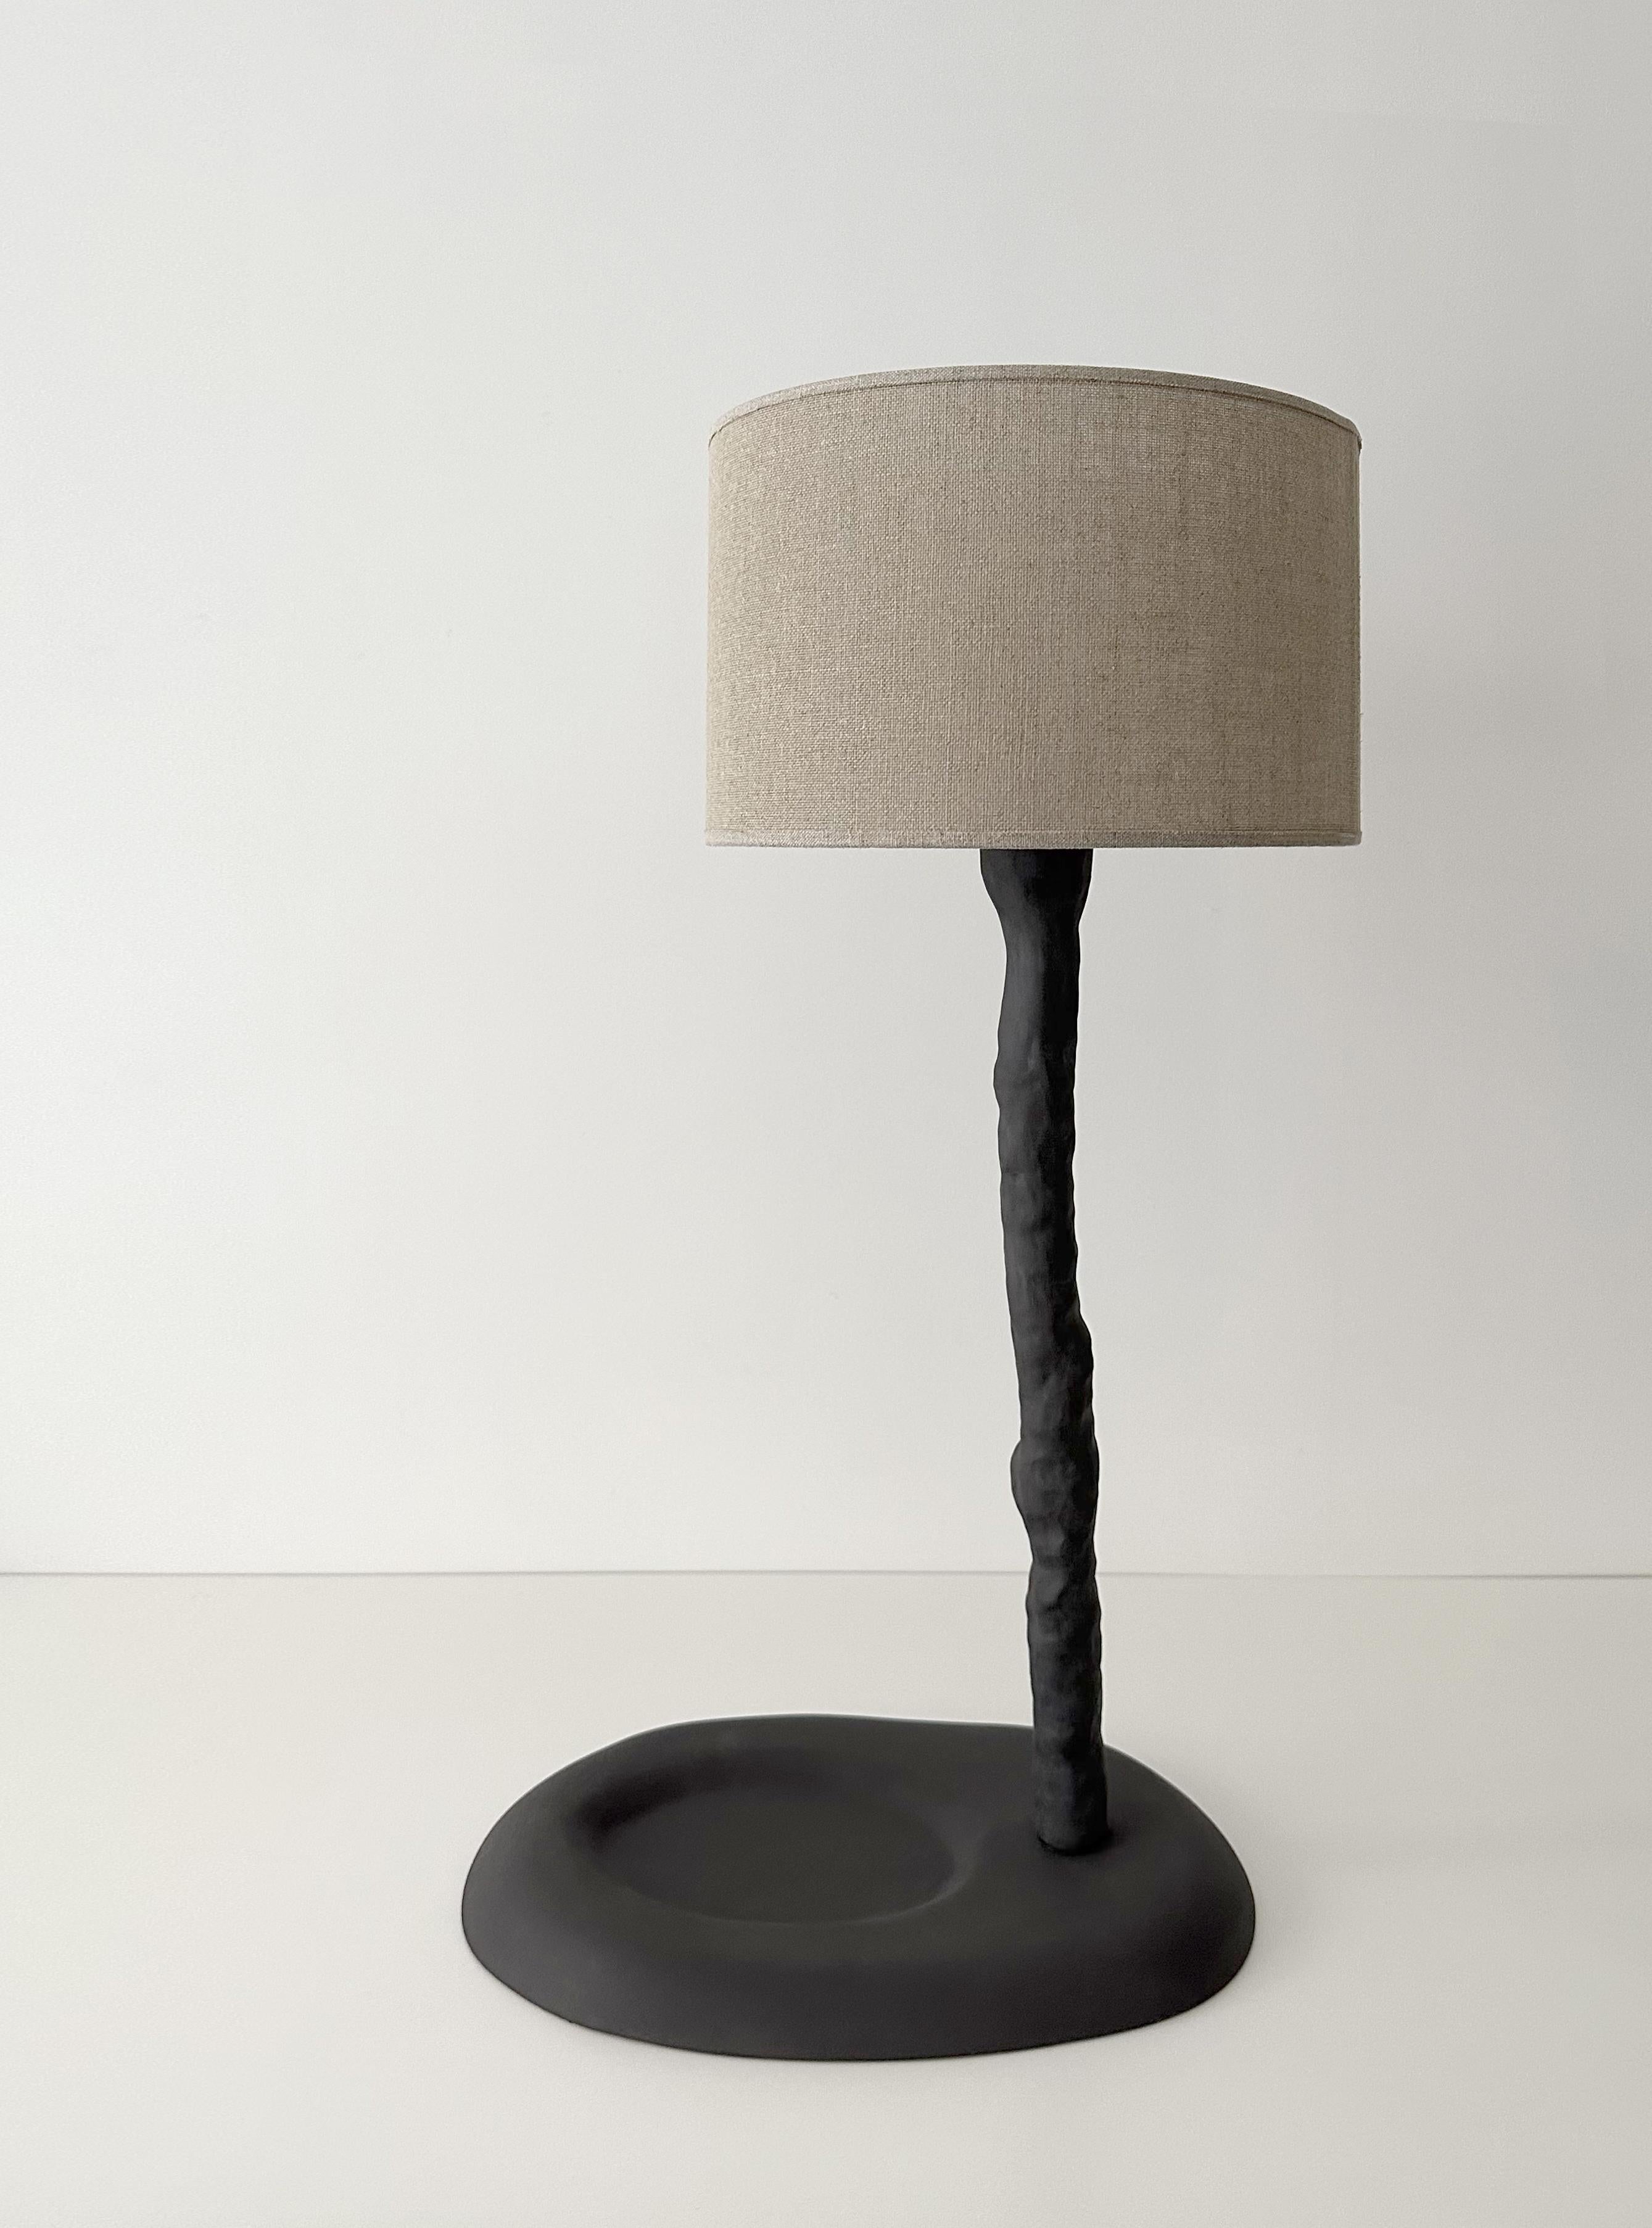 Abstrakte Holzschüssel-Lampe von Atelier Monochrome.
Ein Unikat.
MATERIALIEN: Keramik / Sandstein.
Abmessungen: H 70 x T 28 x B 40 cm.

Alle unsere Lampen können je nach Land verkabelt werden. Wenn es in die USA verkauft wird, wird es zum Beispiel